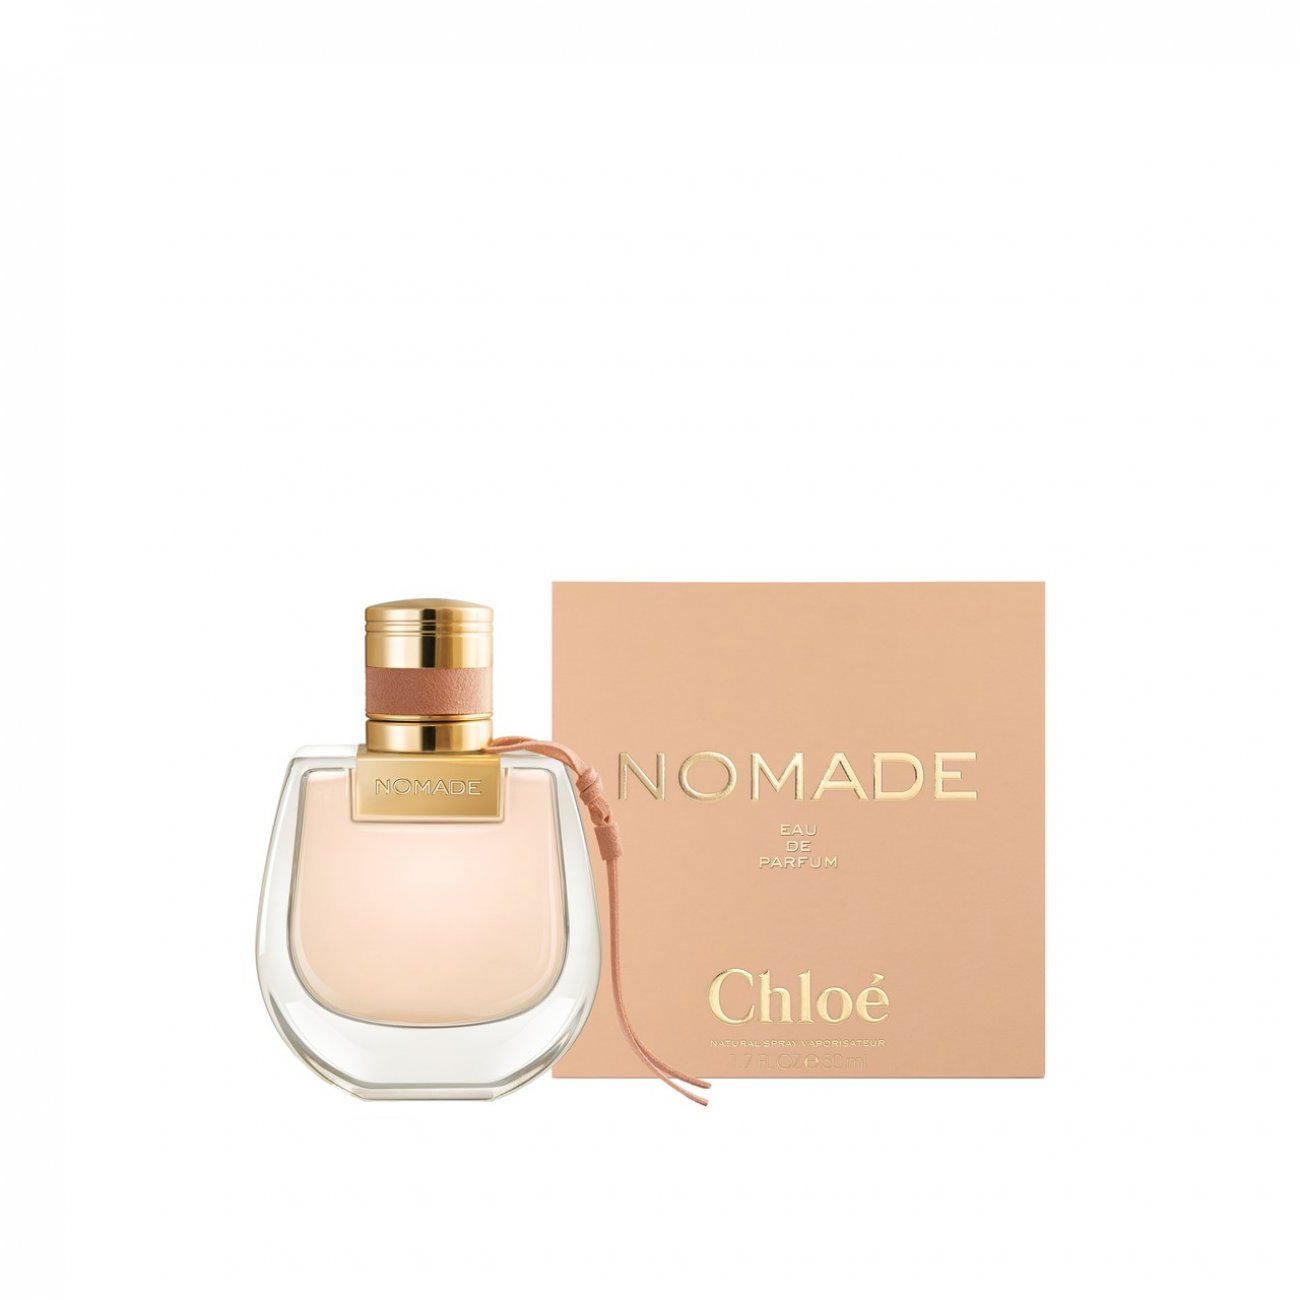 Buy Chloé Nomade Eau de Parfum 75ml · Philippines